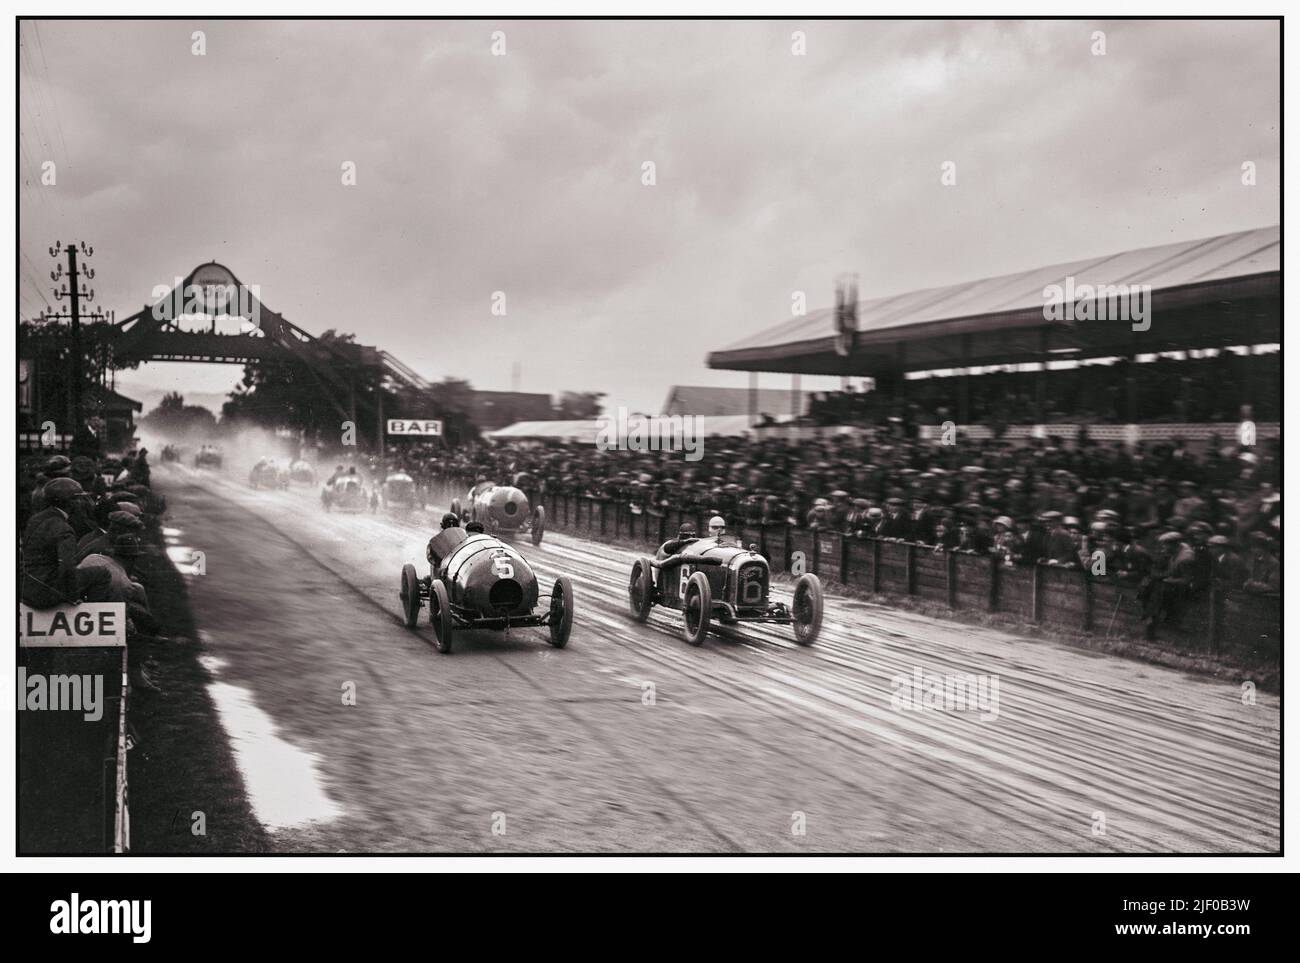 Der französische Grand Prix 1922 beginnt an einem trüben, feuchten Tag. Der Grand Prix von Frankreich 1922 (ehemals XVI Grand Prix de l'Automobile Club de France) war ein Grand-Prix-Rennen, das am 15. Juli 1922 in Straßburg stattfand. Das Rennen wurde über 60 Runden der Strecke von 13,38km auf einer Gesamtdistanz von etwas mehr als 800km gefahren und von Felice Nazzaro mit einem Fiat gewonnen. Dieses Rennen ist als erster Grand Prix mit masserem Start bemerkenswert. Stockfoto